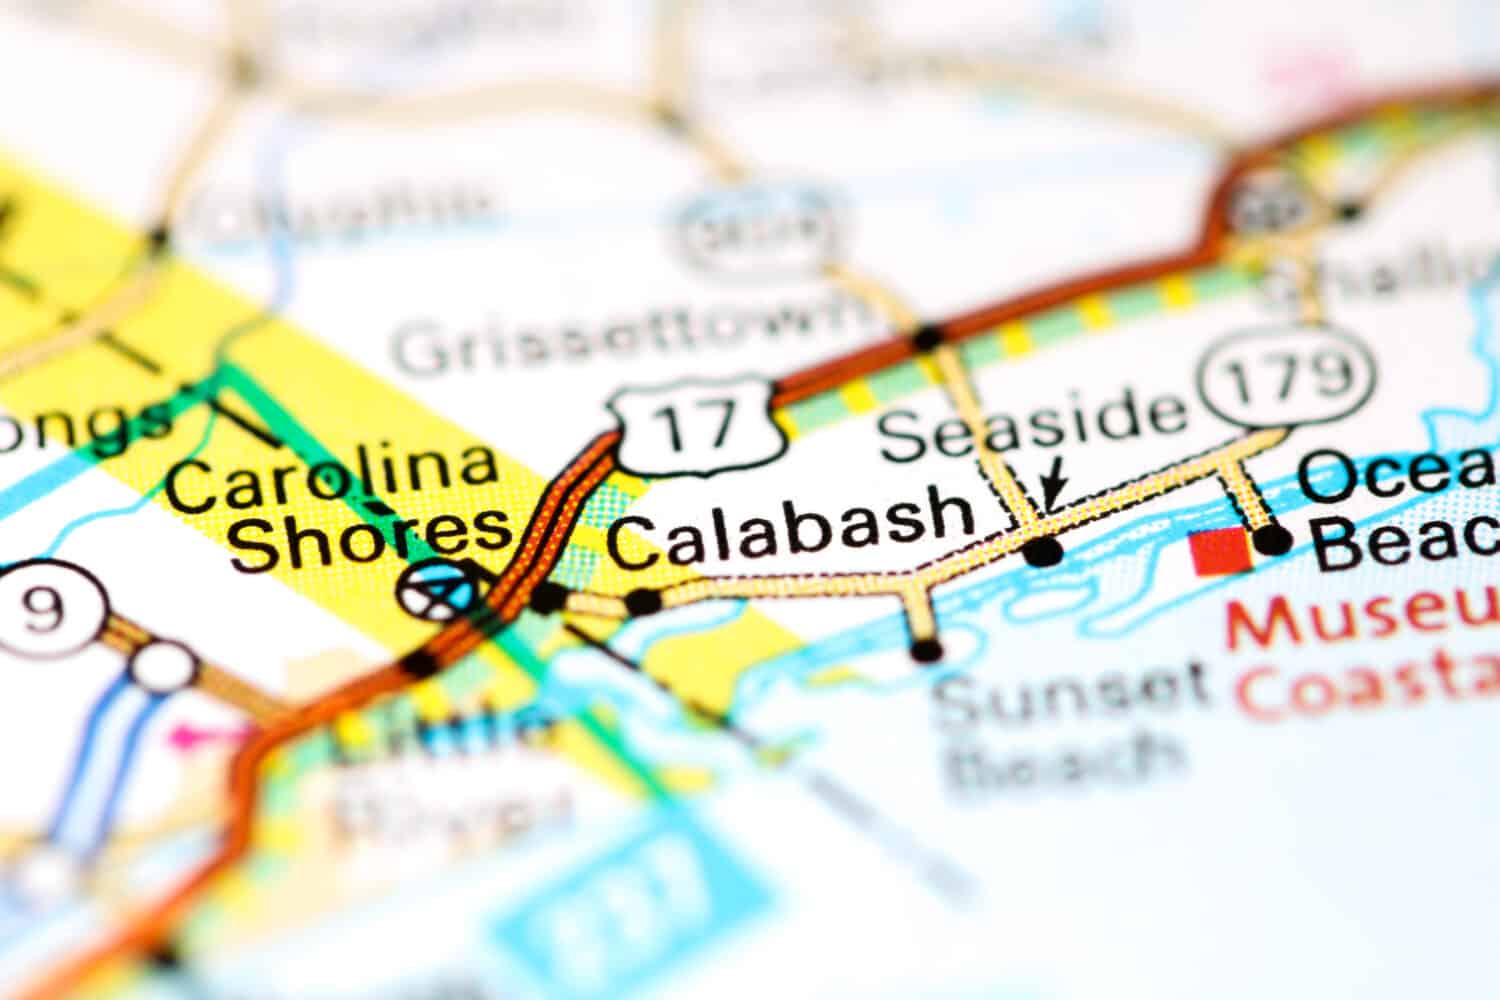 Calabash. North Carolina. USA on a map